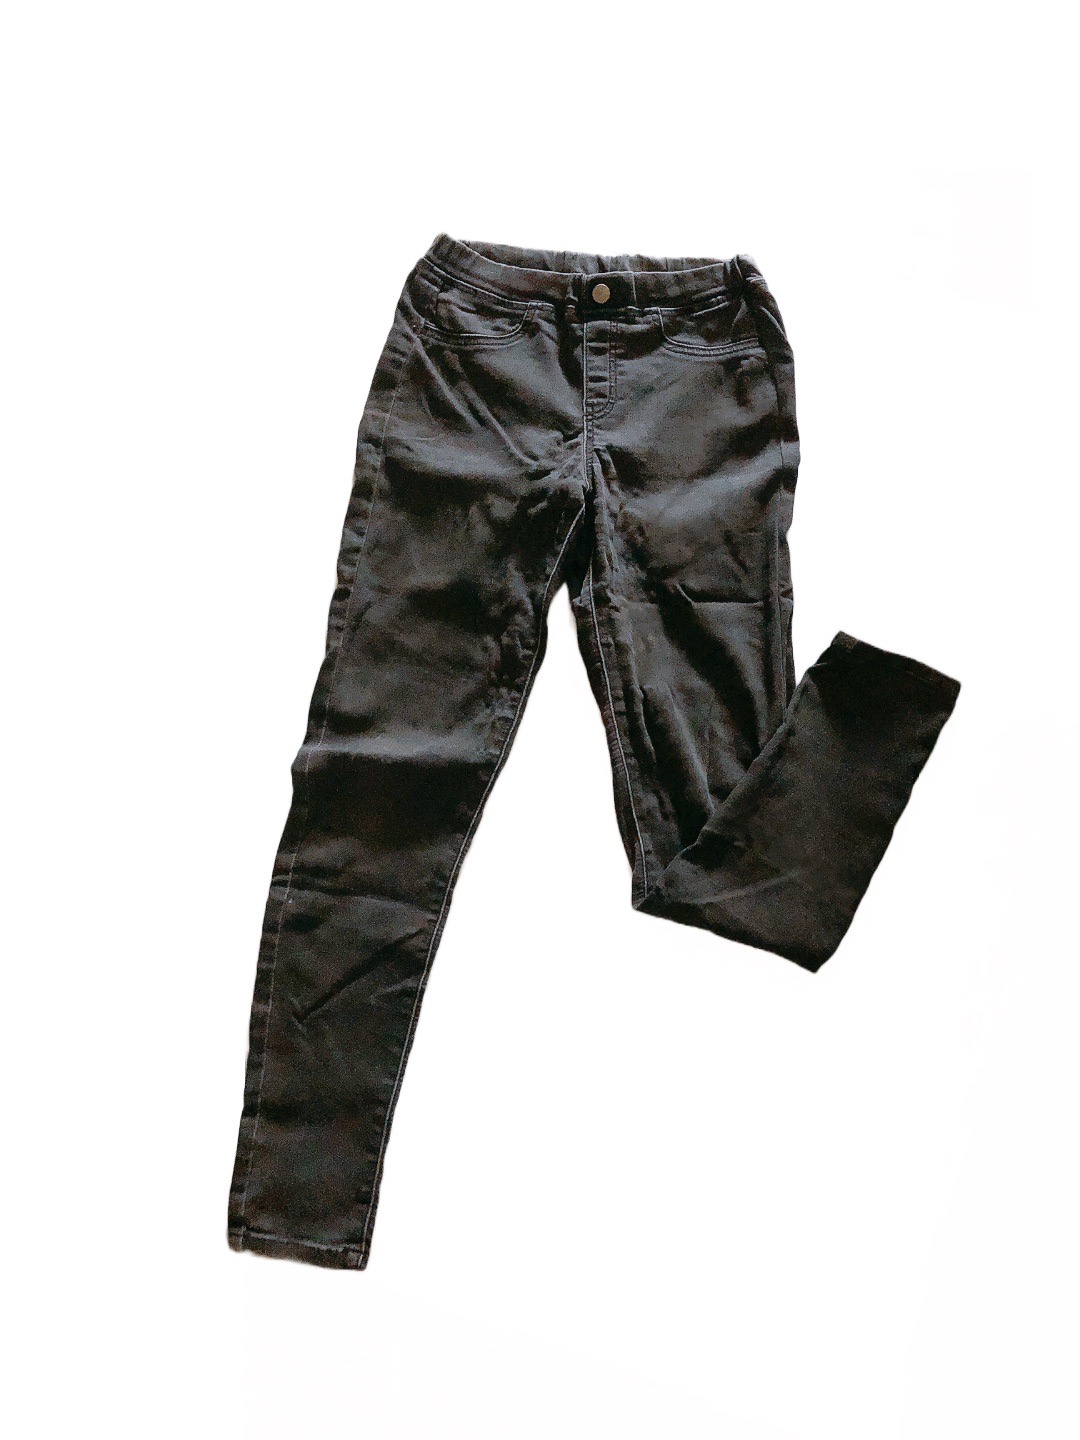 《GU》黑色窄管彈性兒童青少年牛仔長褲(155cm)
NT$99